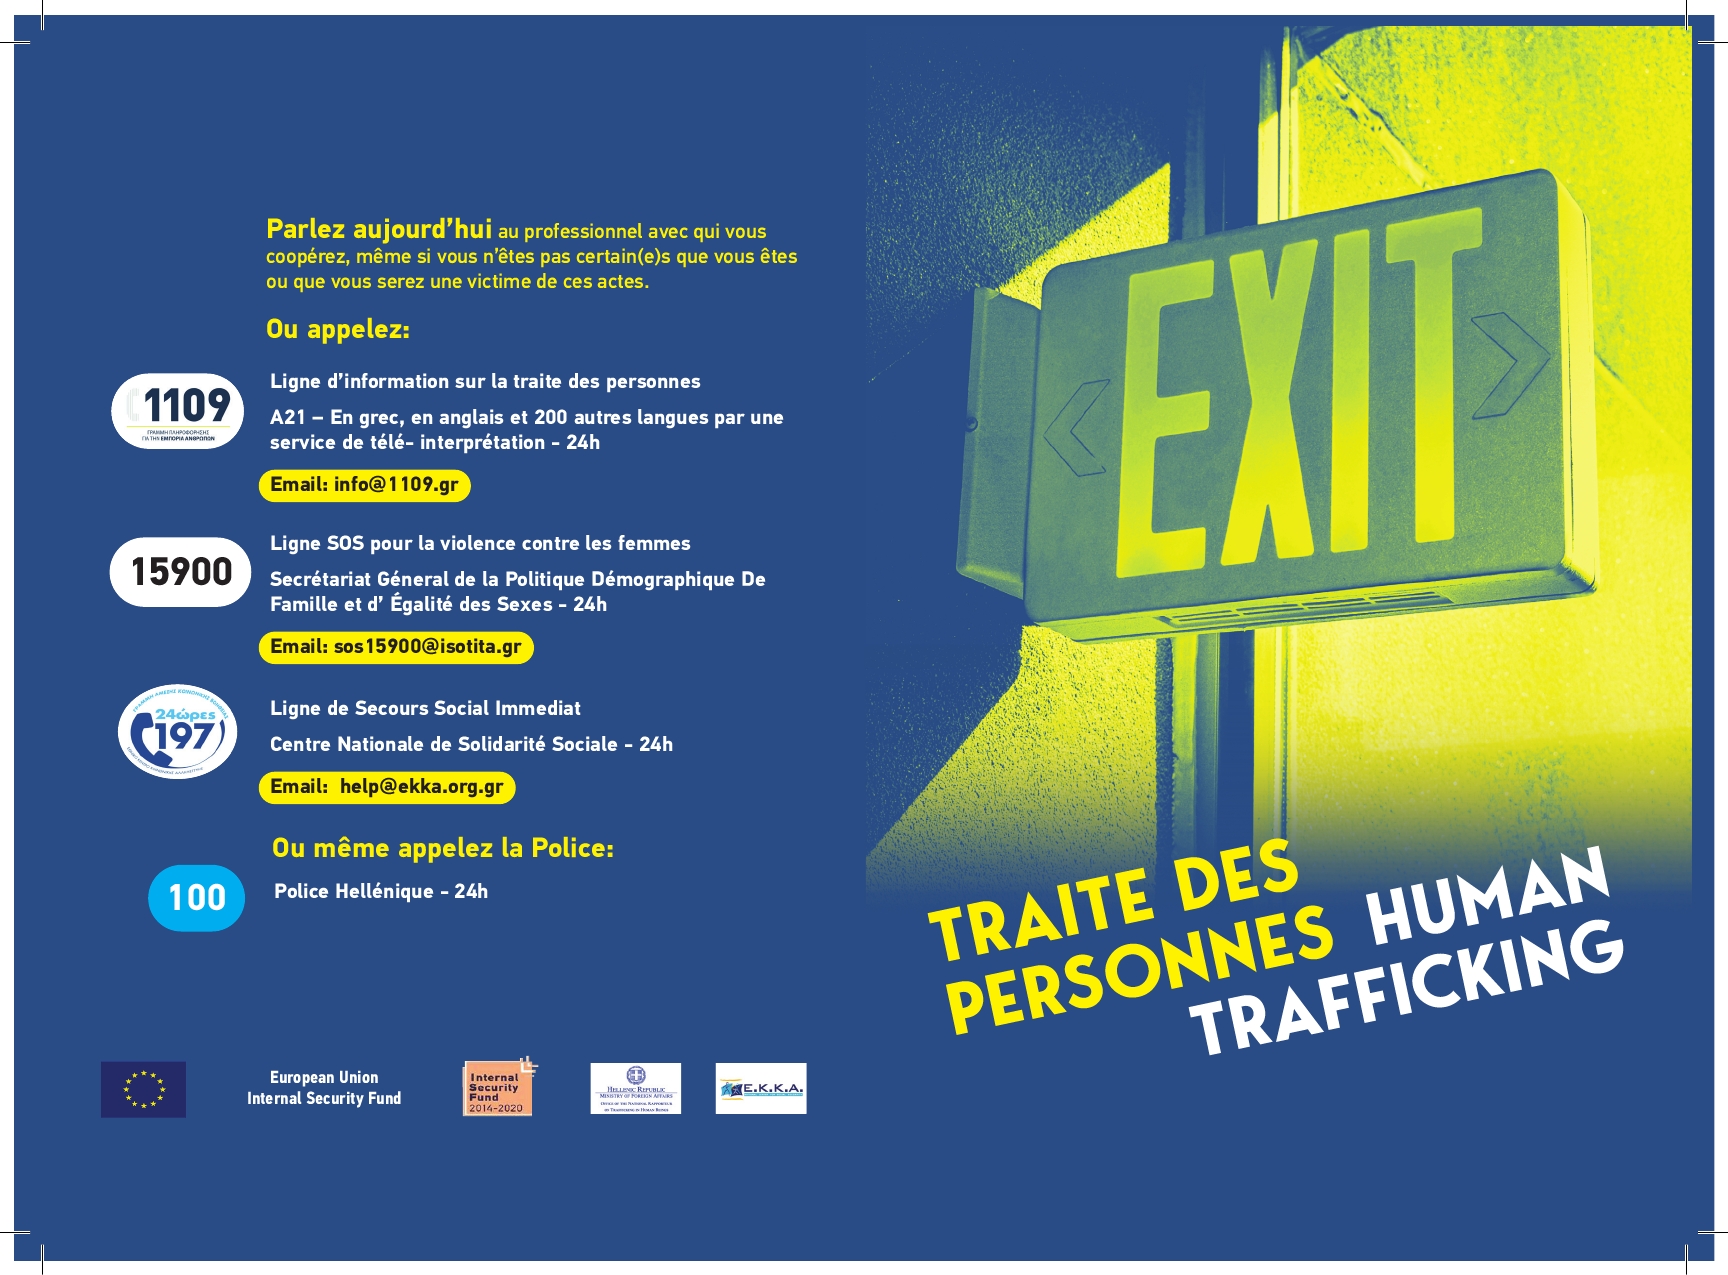 214574 04 ekka human trafficking fr1